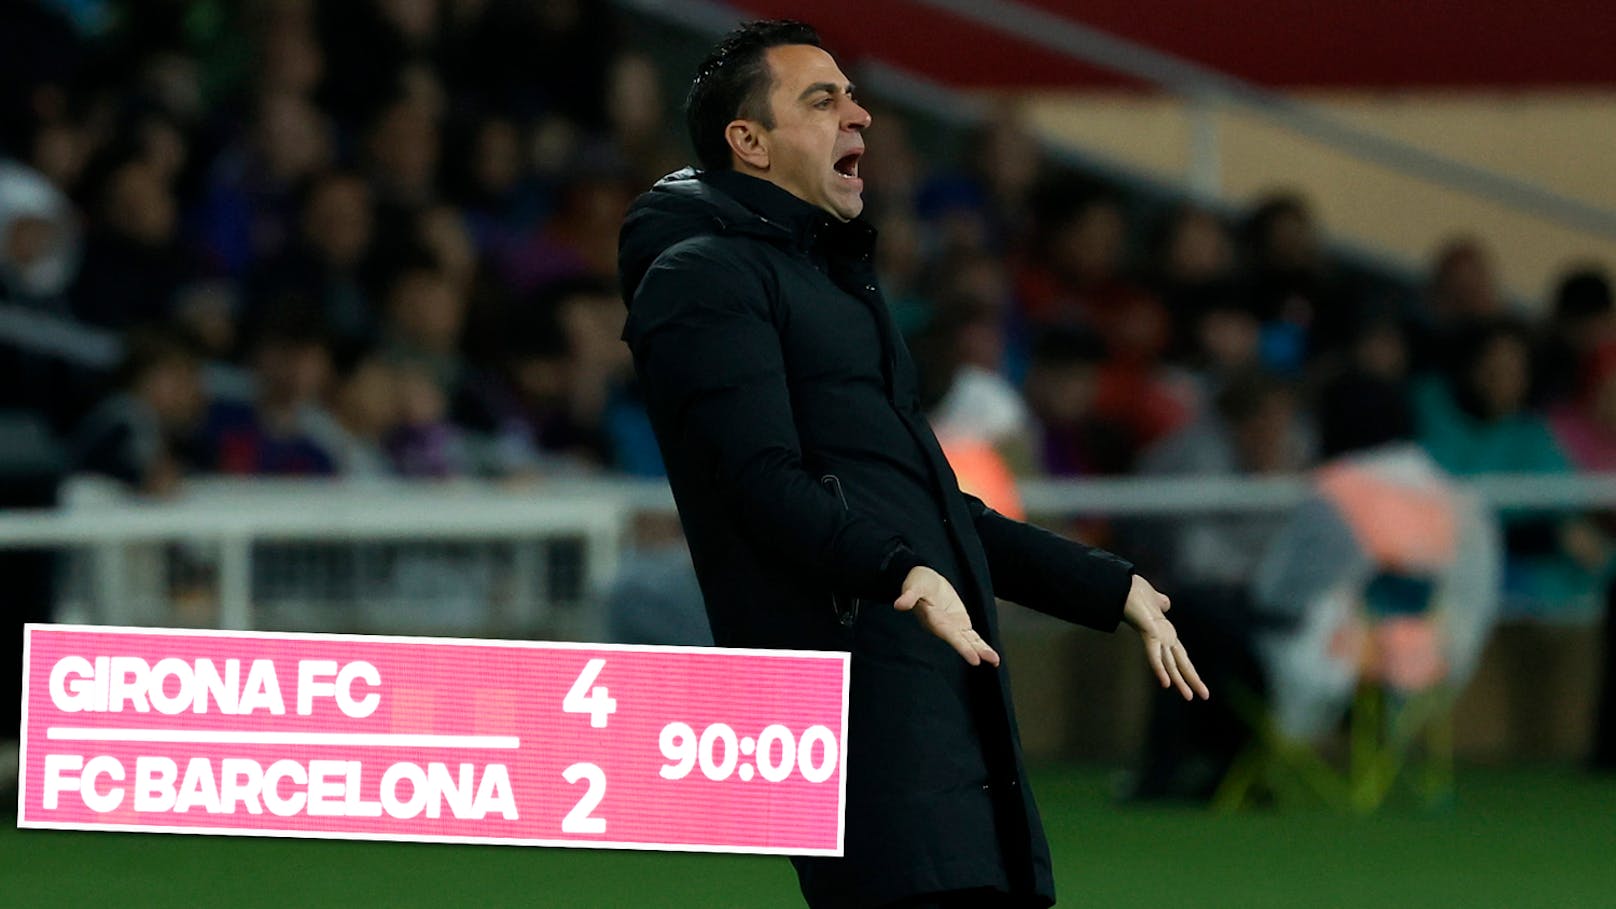 Barca-Trainer Xavi gegen Stars: "Es ist eine Schande"